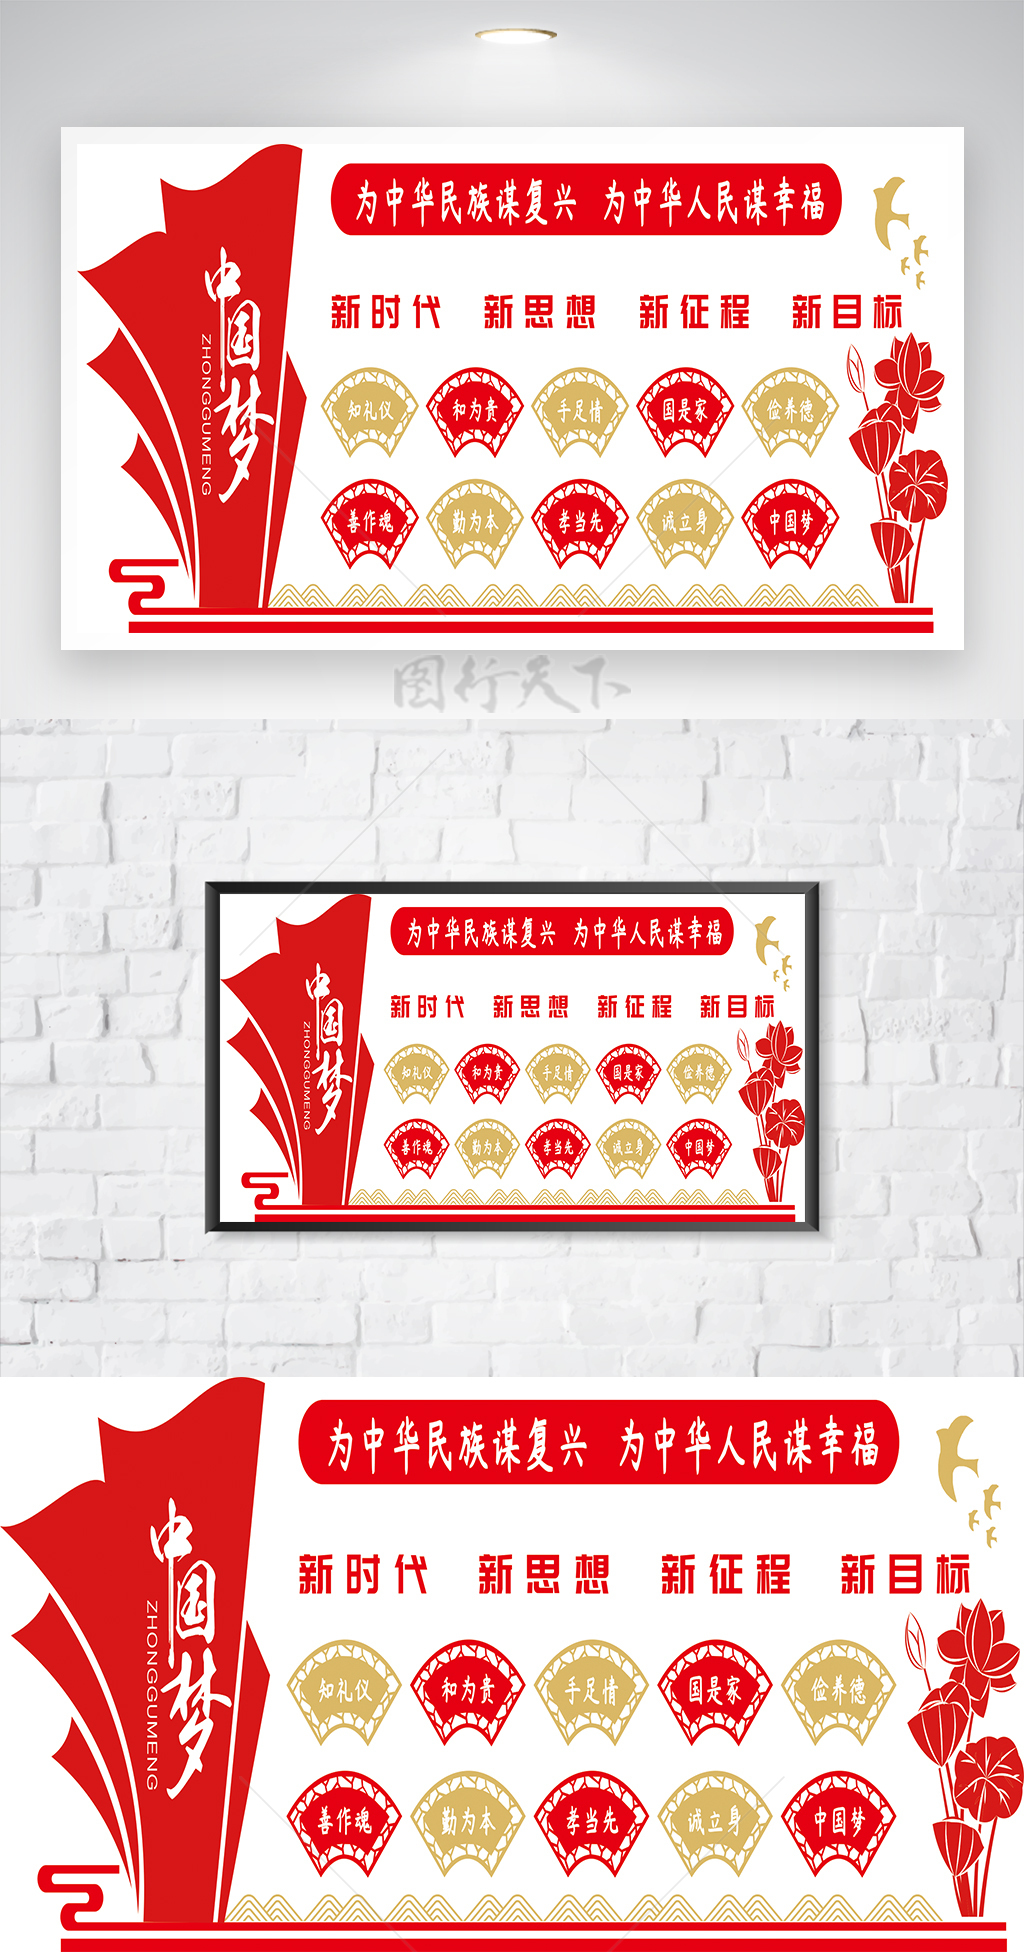 原创中国梦文化墙海报设计